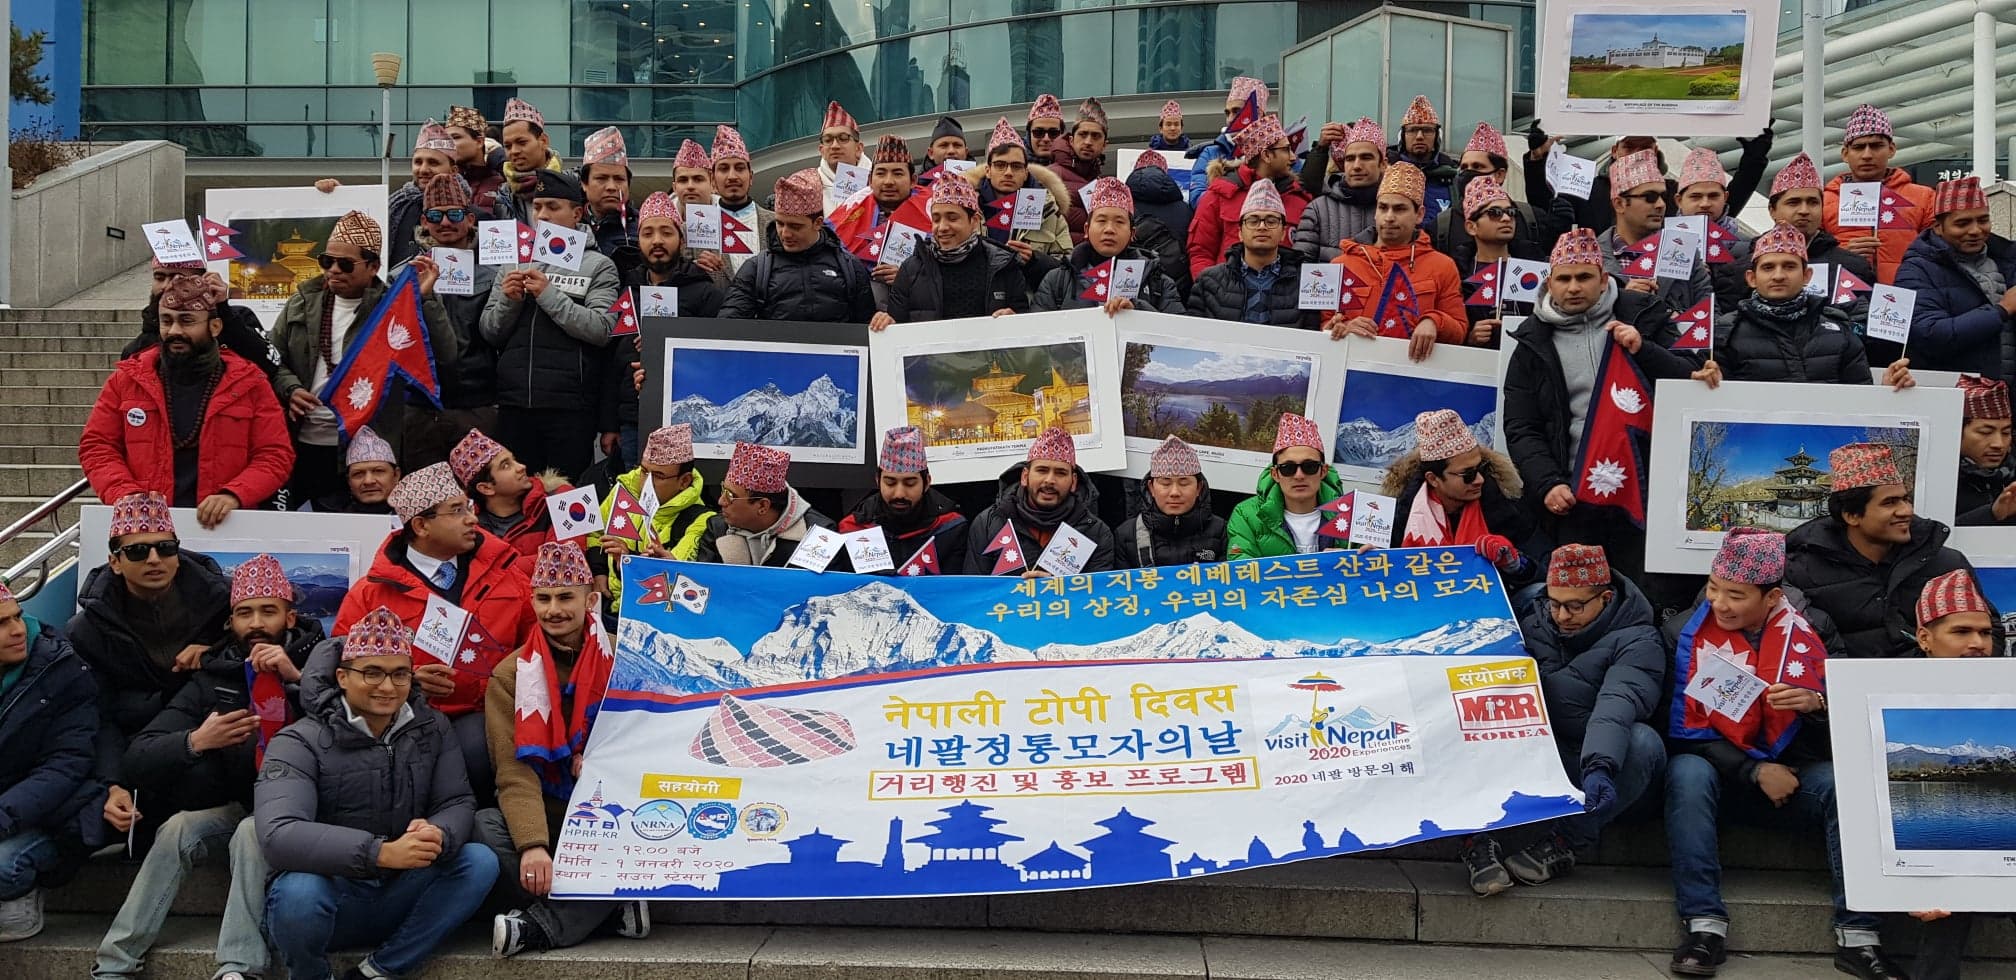 दक्षिण कोरियामा टोपी दिवस मनाउँदै भ्रमण वर्षको प्रचार